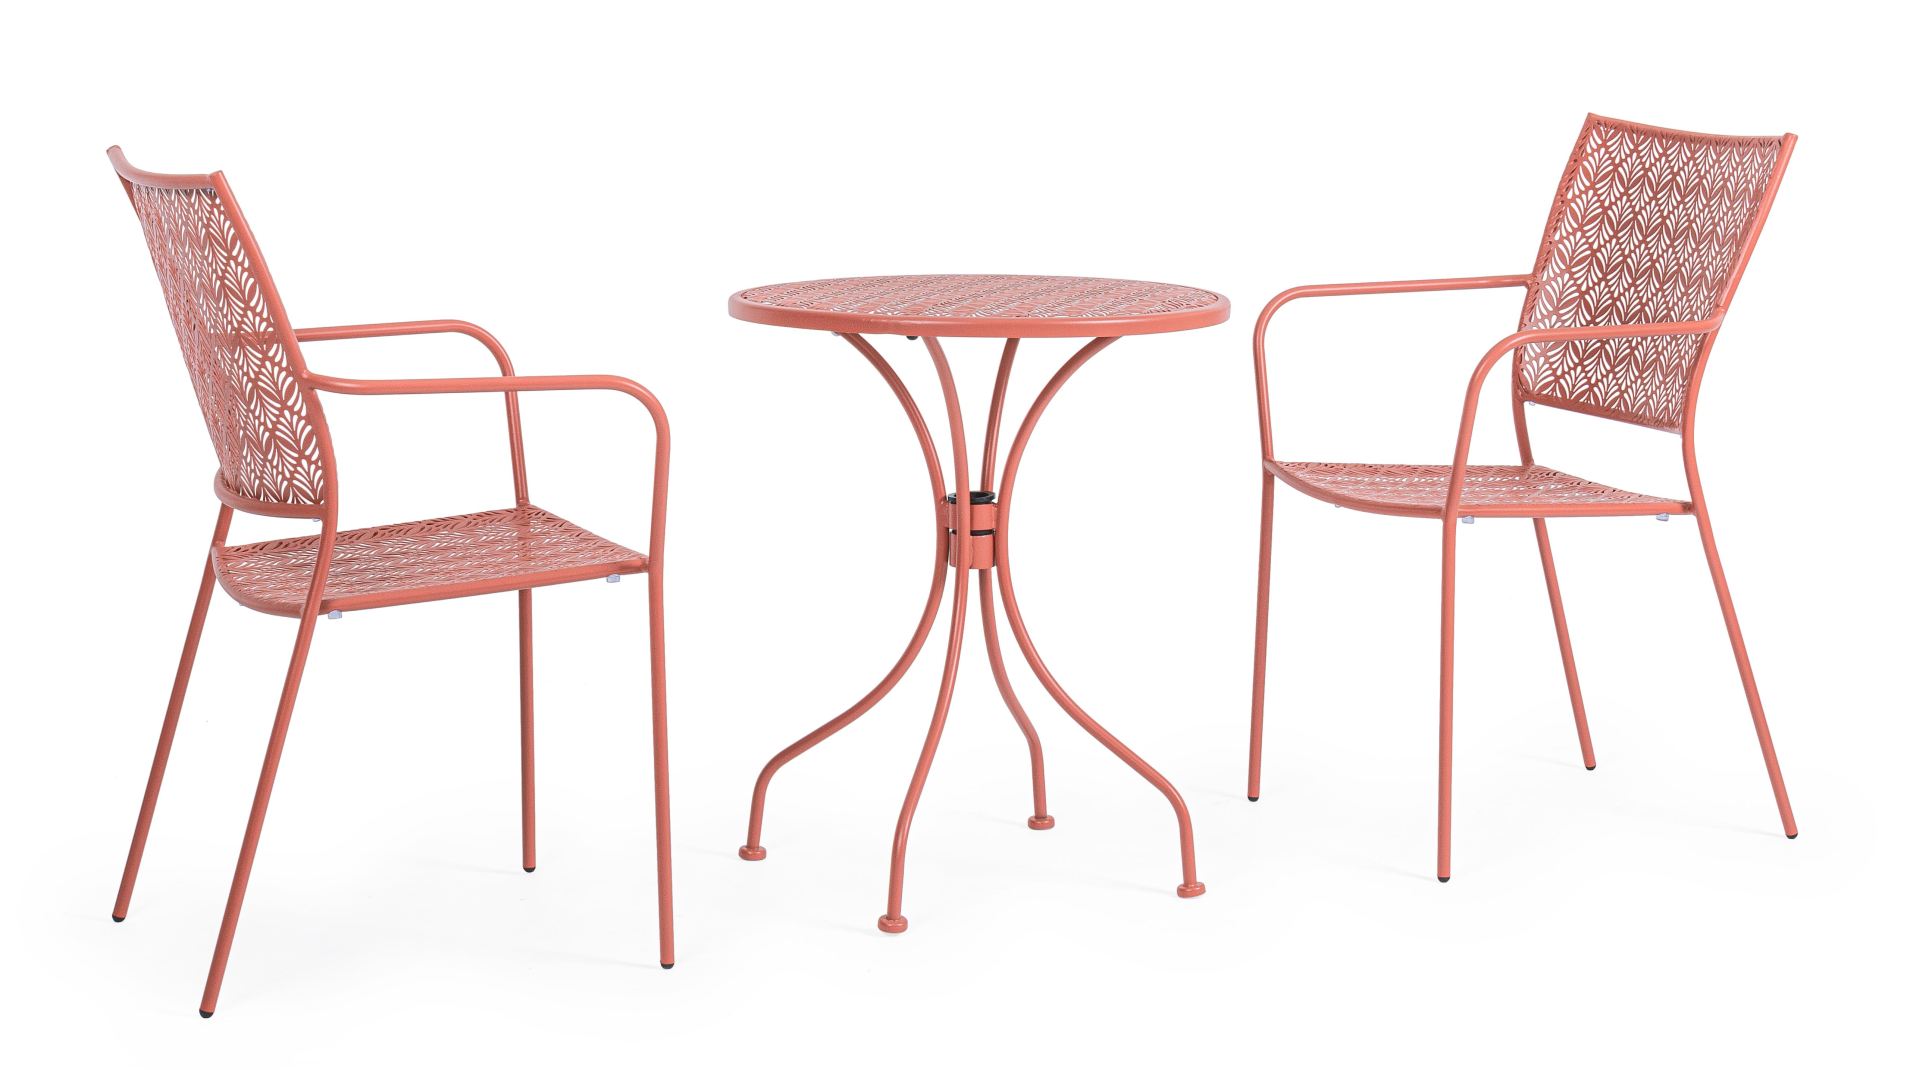 Der Gartentisch Lizette überzeugt mit seinem klassischen Design. Gefertigt wurde er aus Aluminium, welches einen roten Farbton besitzt. Das Gestell ist aus auch Aluminium und hat eine rote Farbe. Der Tisch verfügt über einen Durchmesser von 60 cm und ist 